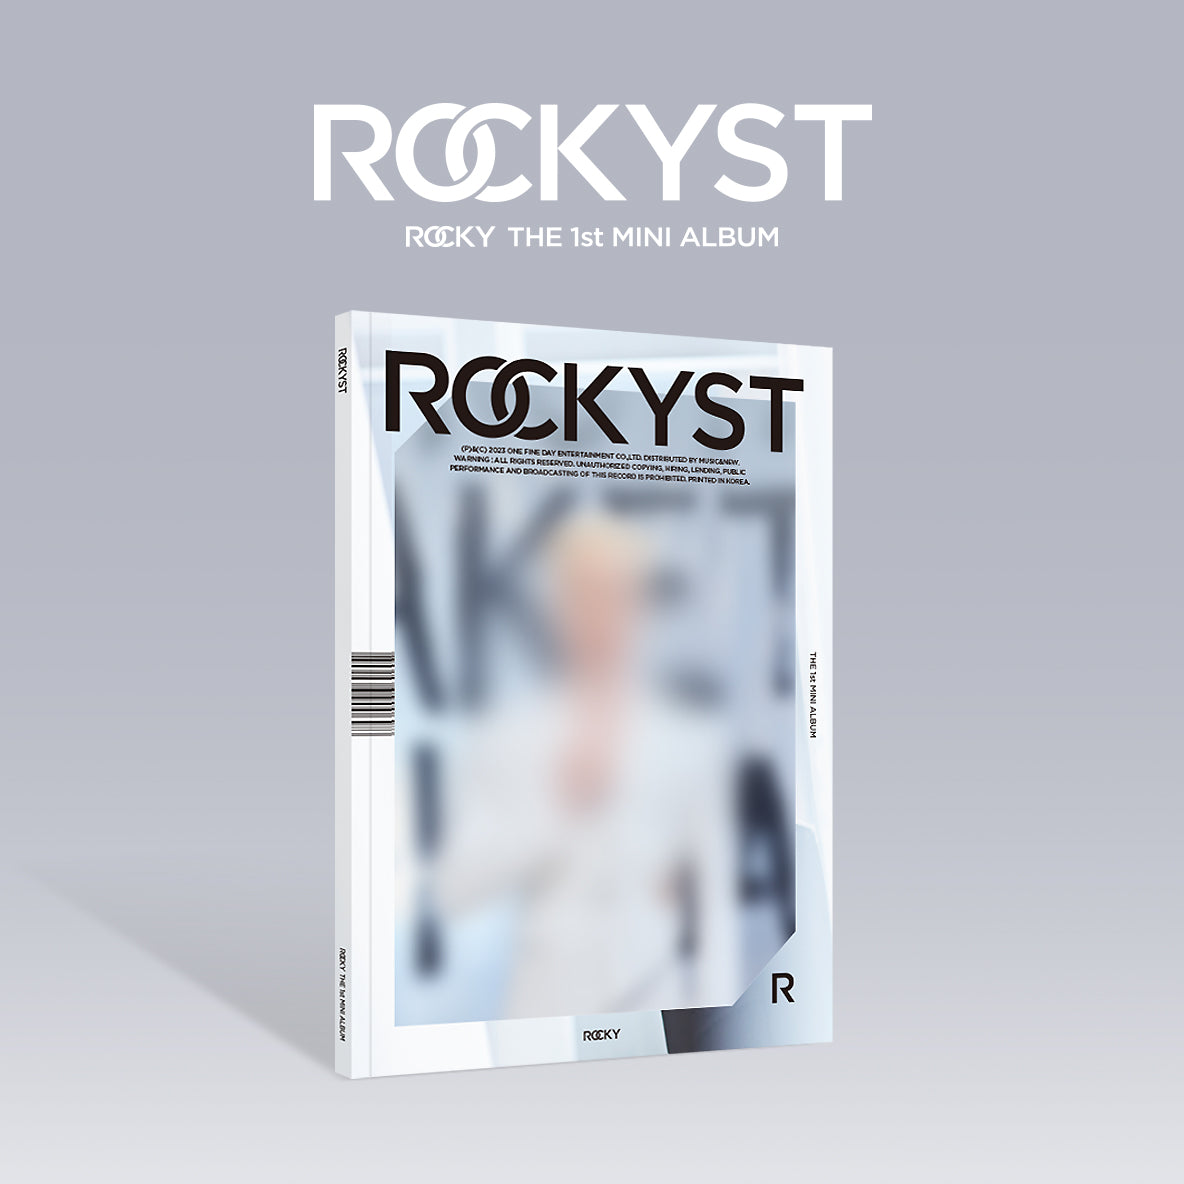 ROCKY 1ST MINI ALBUM 'ROCKYST' CLASSIC VERSION COVER